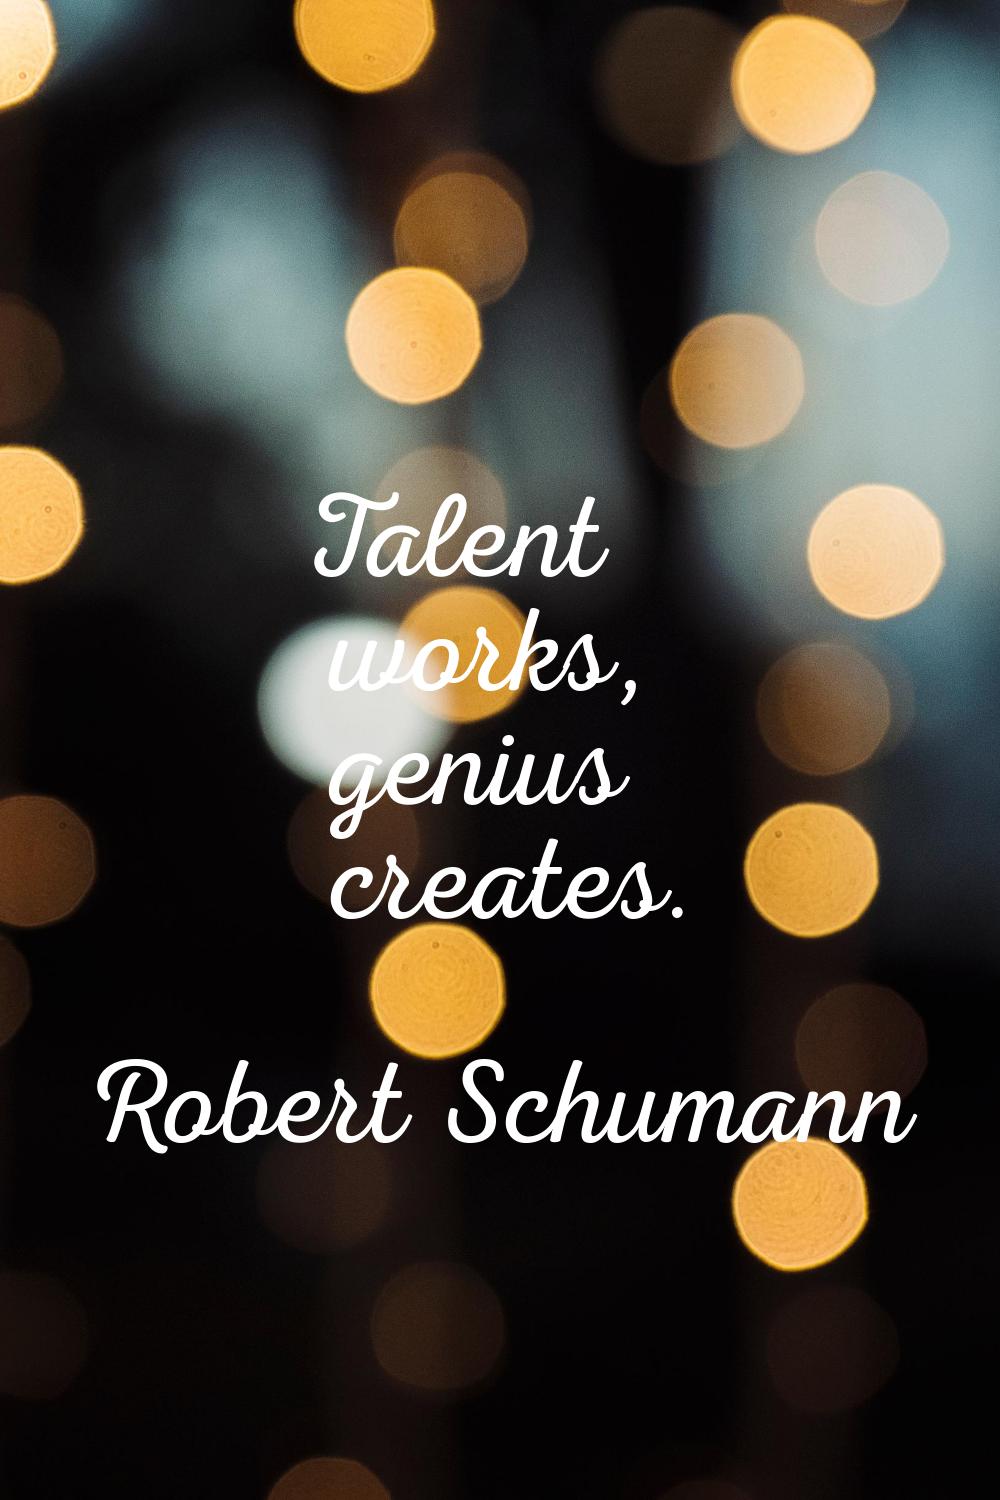 Talent works, genius creates.